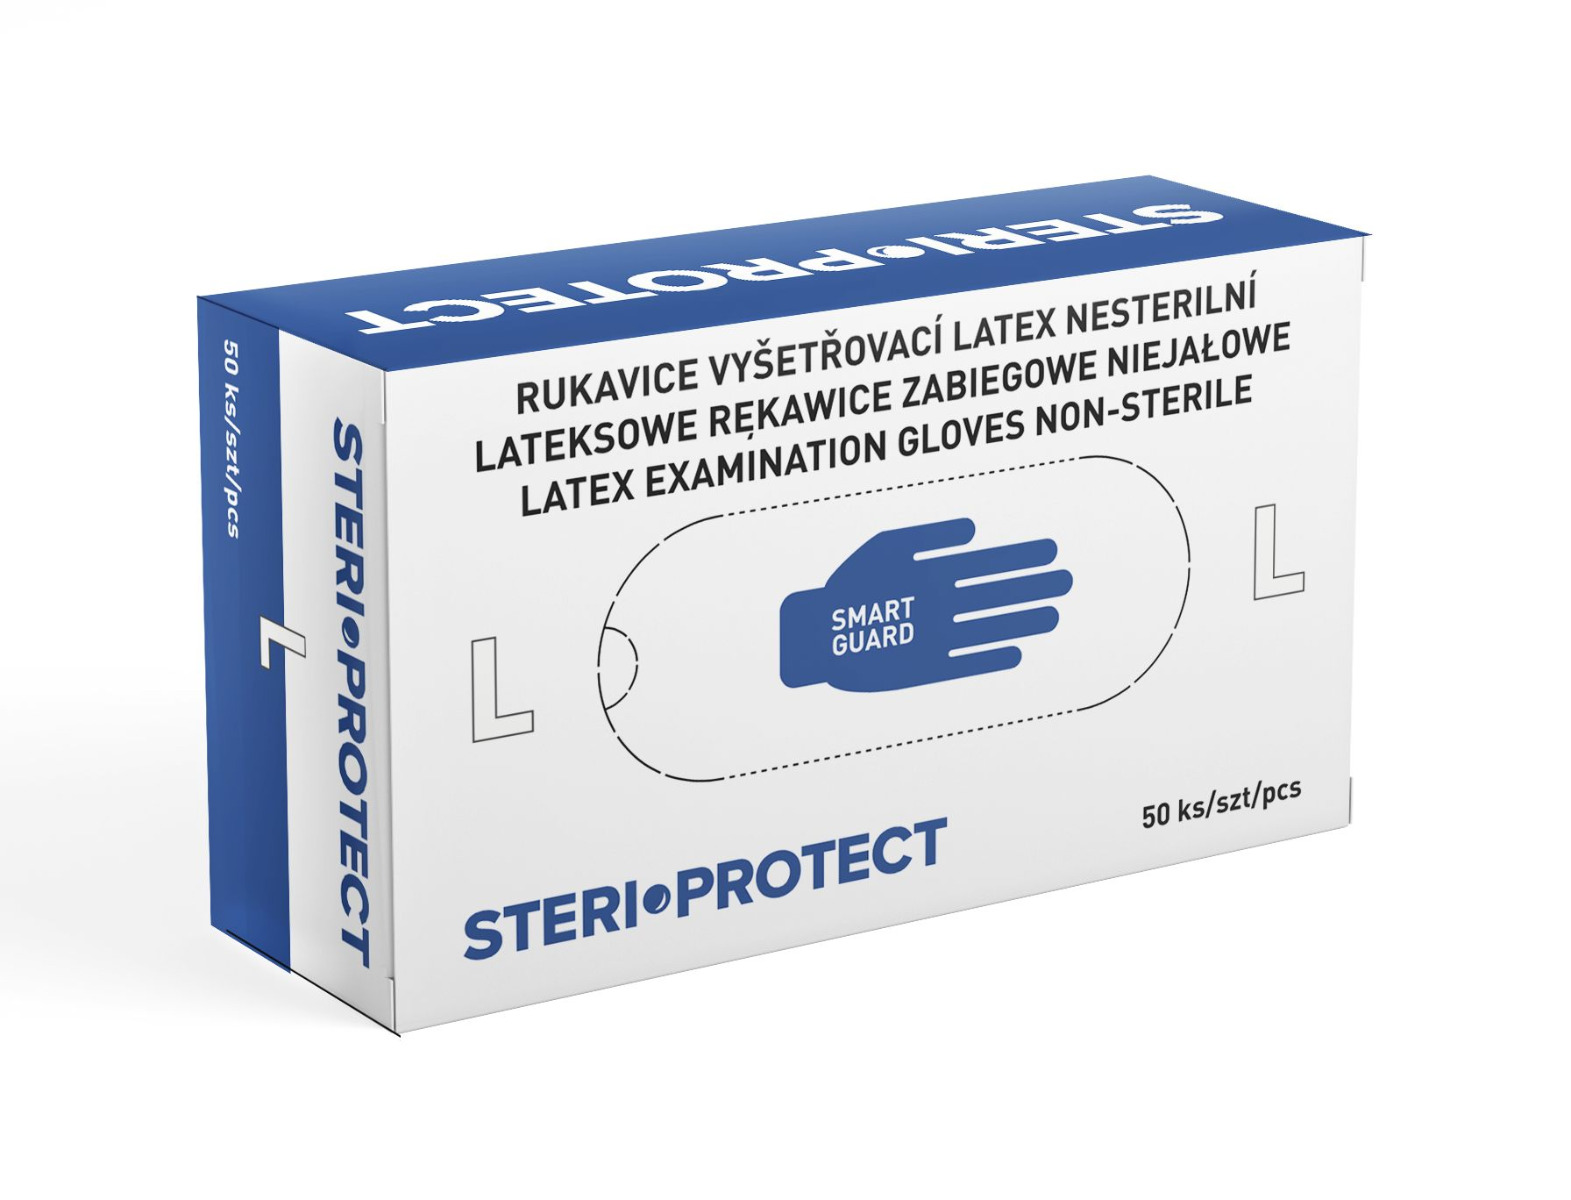 Steriwund Rukavice vyšetřovací latex nesterilní vel. L 50 ks Steriwund